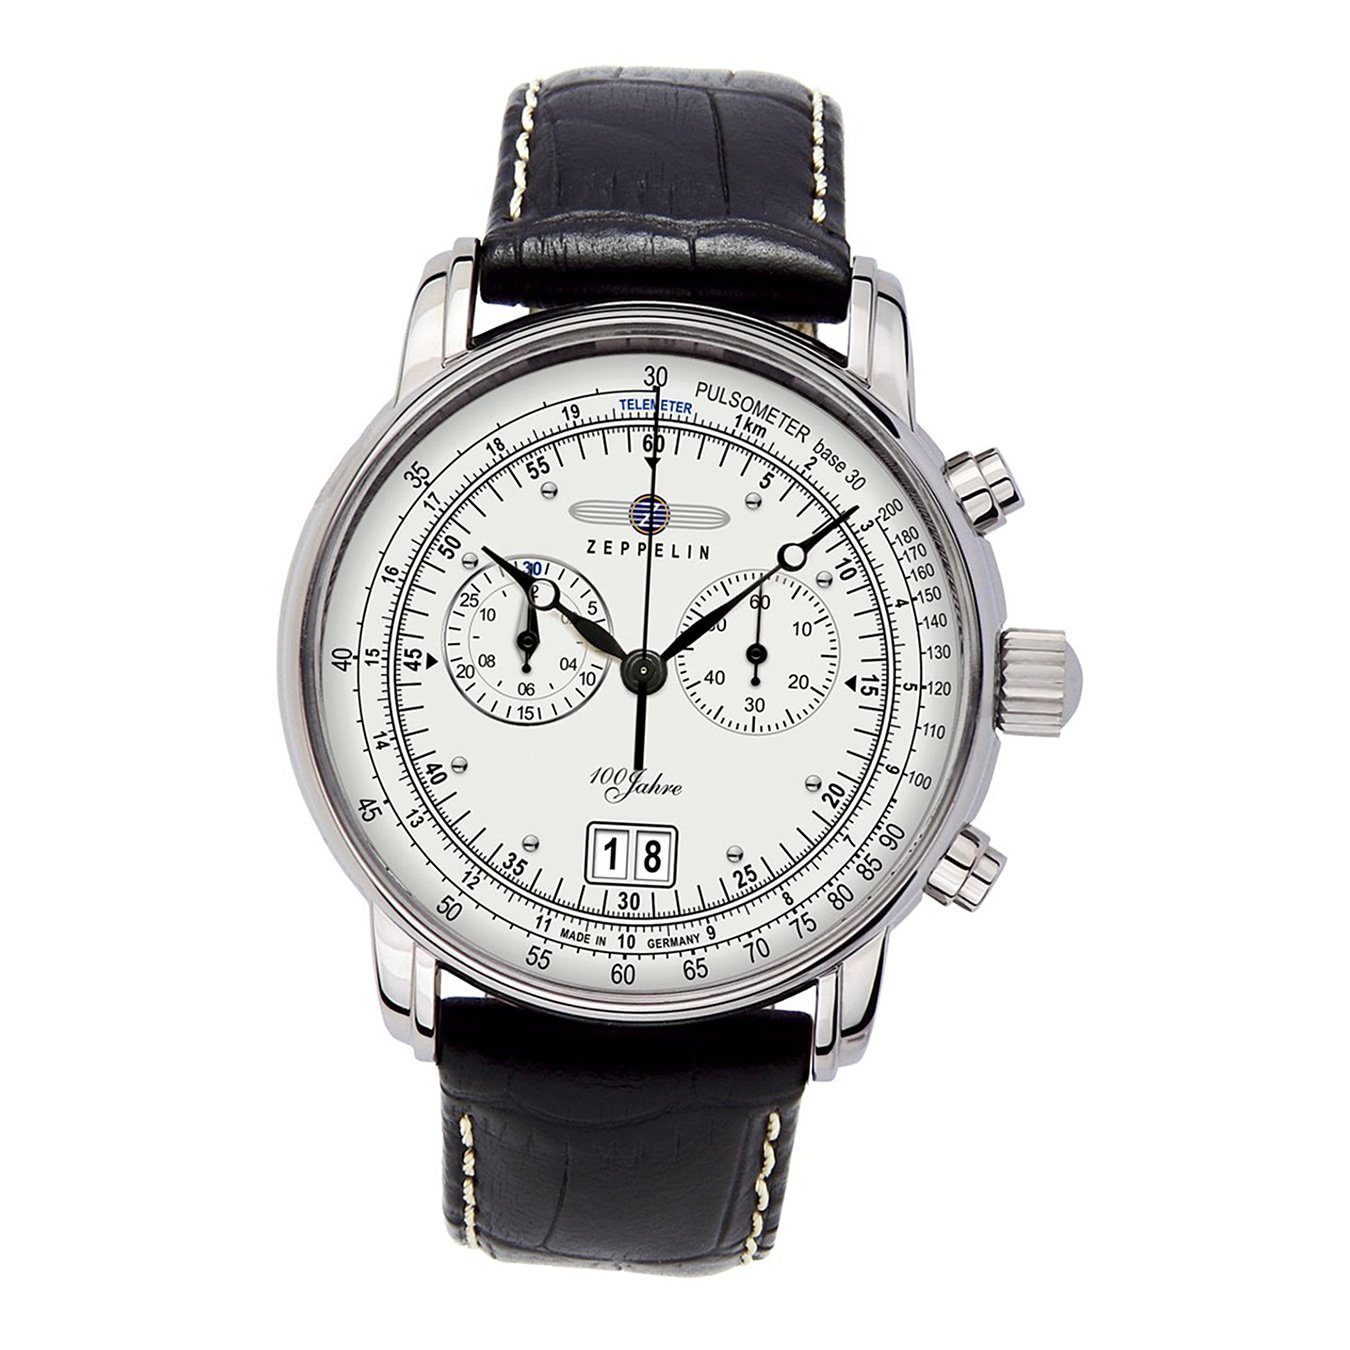 ZEPPELIN Chronograph Zeppelin Herren Uhr Elegant Z7690/1 Leder,  (Armbanduhr), Herren Armbanduhr rund, groß (ca. 43mm), Lederarmband schwarz